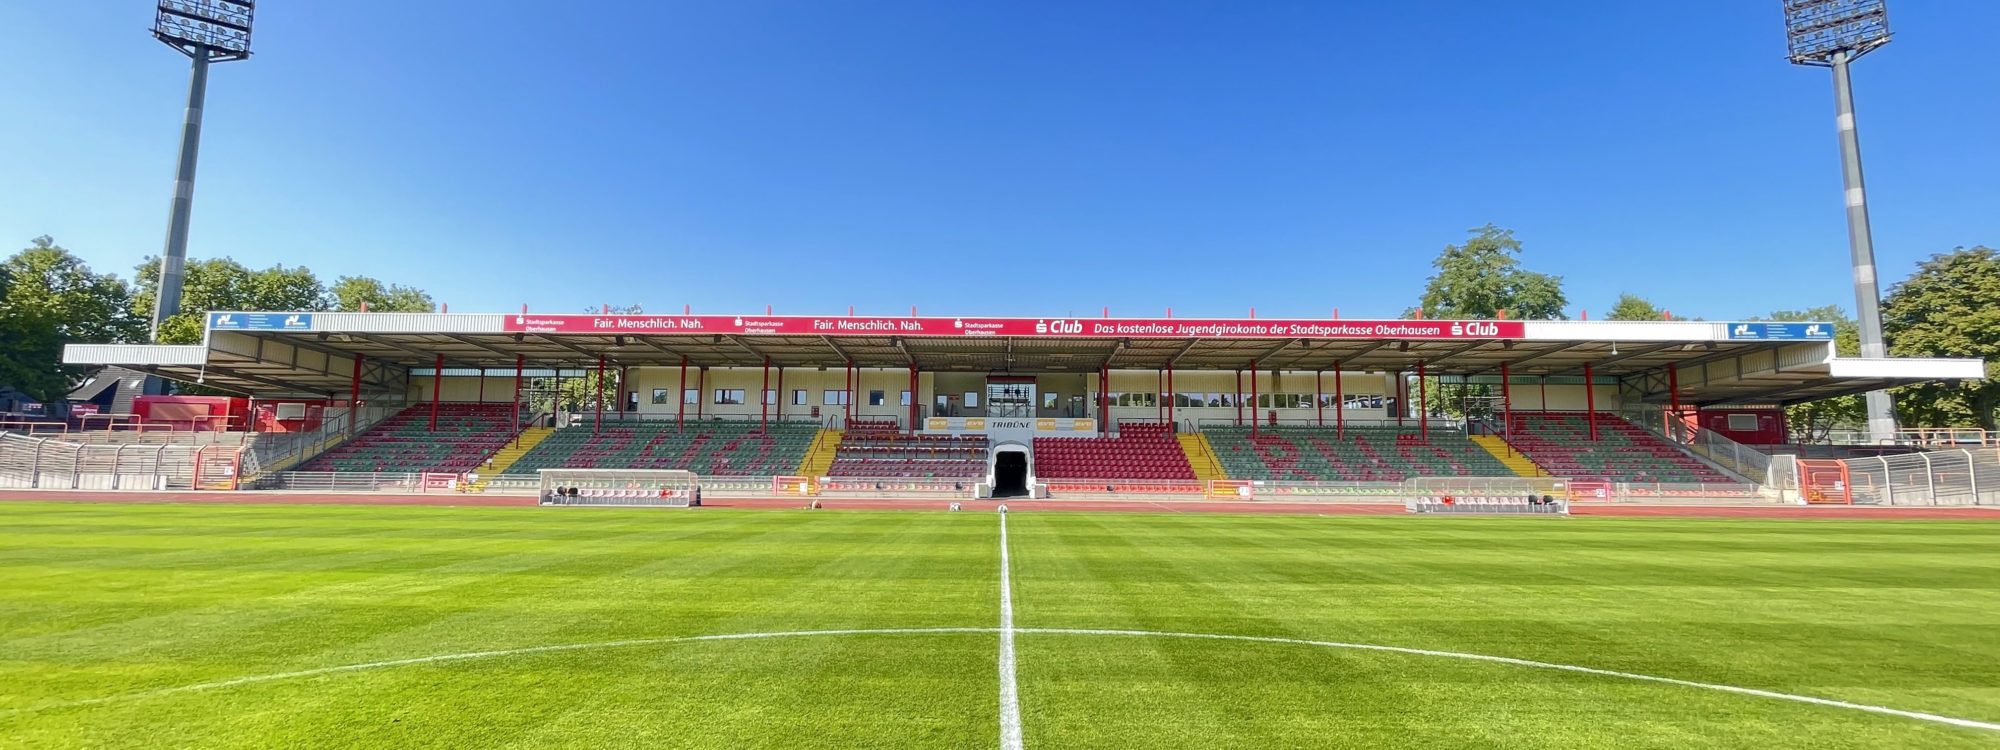 The picture shows the Niederrhein Stadium in Oberhausen